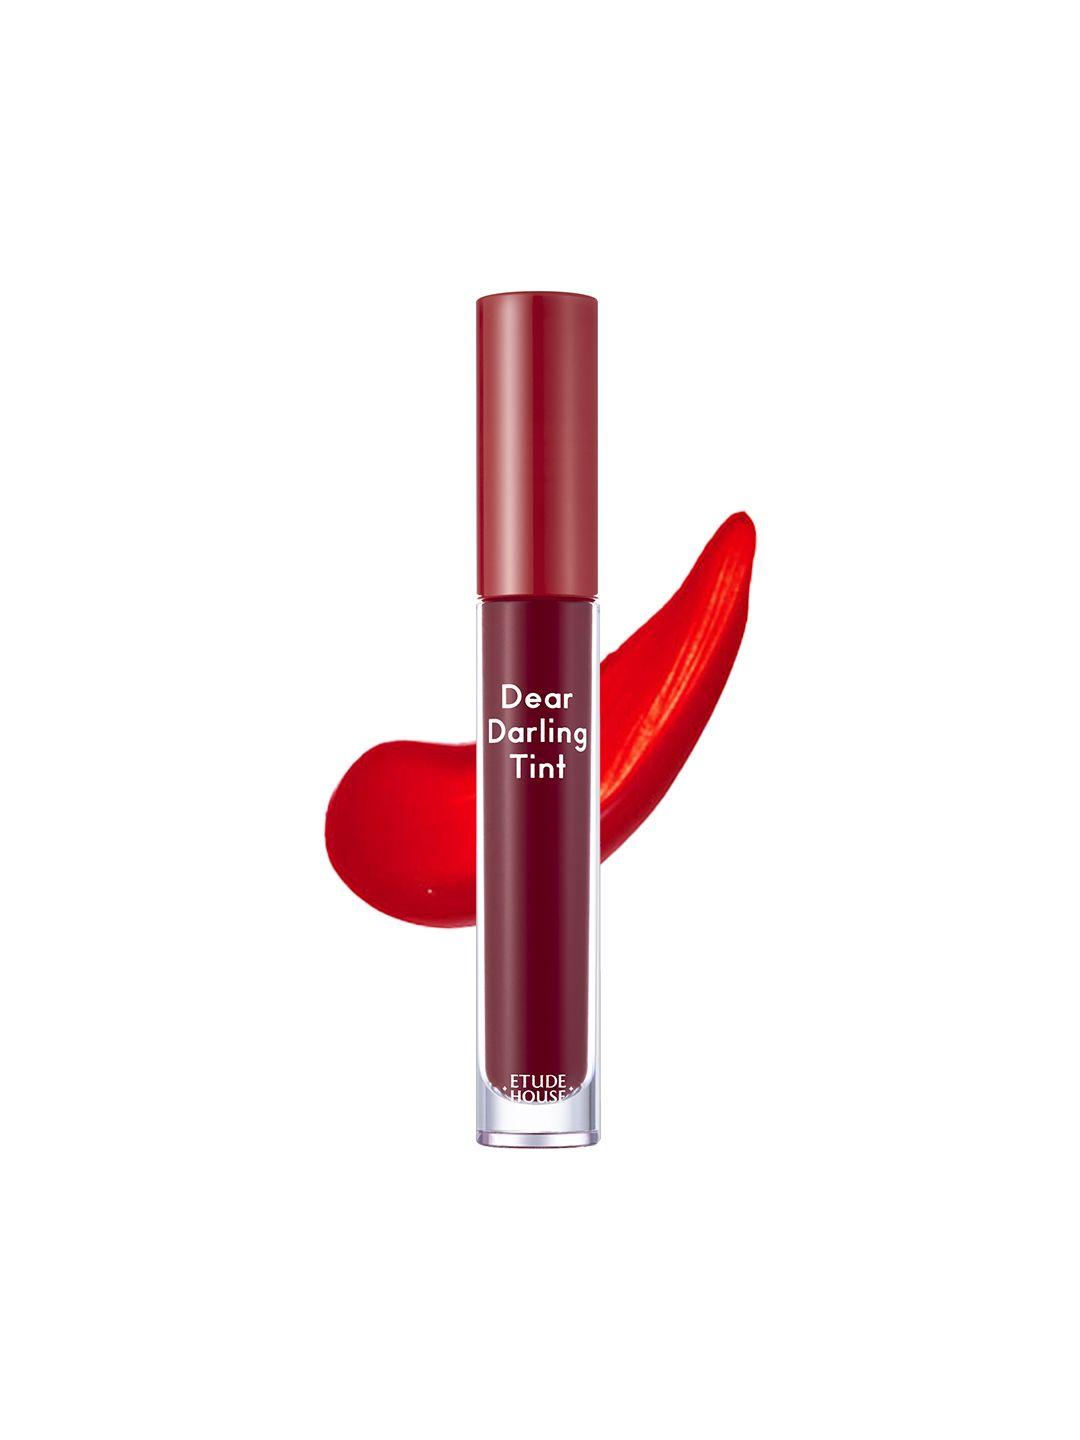 etude dear darling water gel tint matte lipstick 5 g - rd303